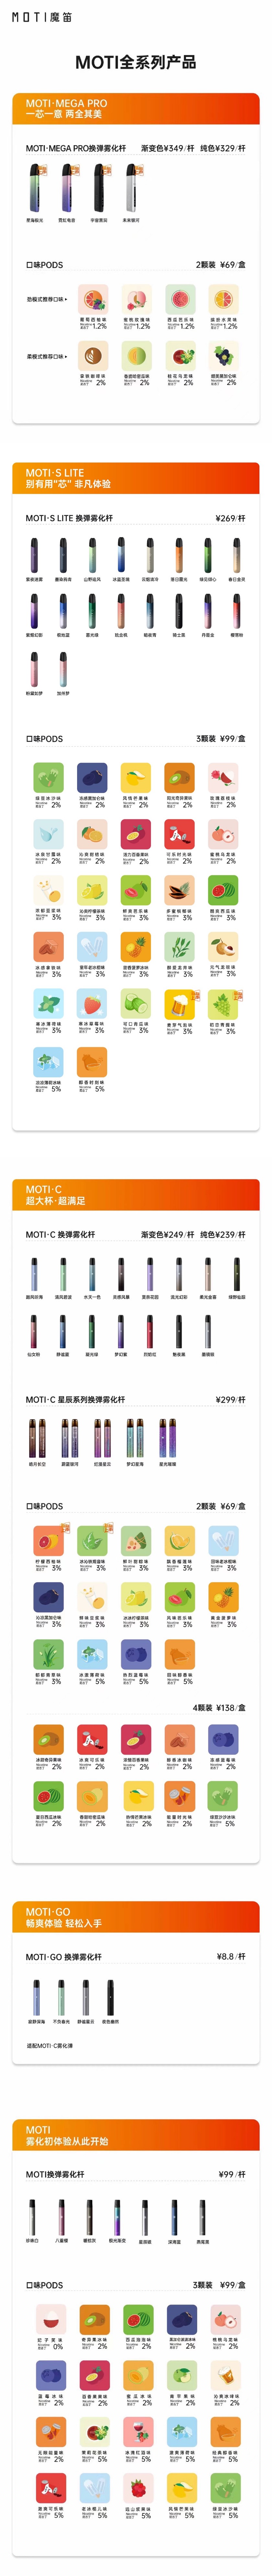 魔笛系列电子烟价目表-魔笛全产品系列图